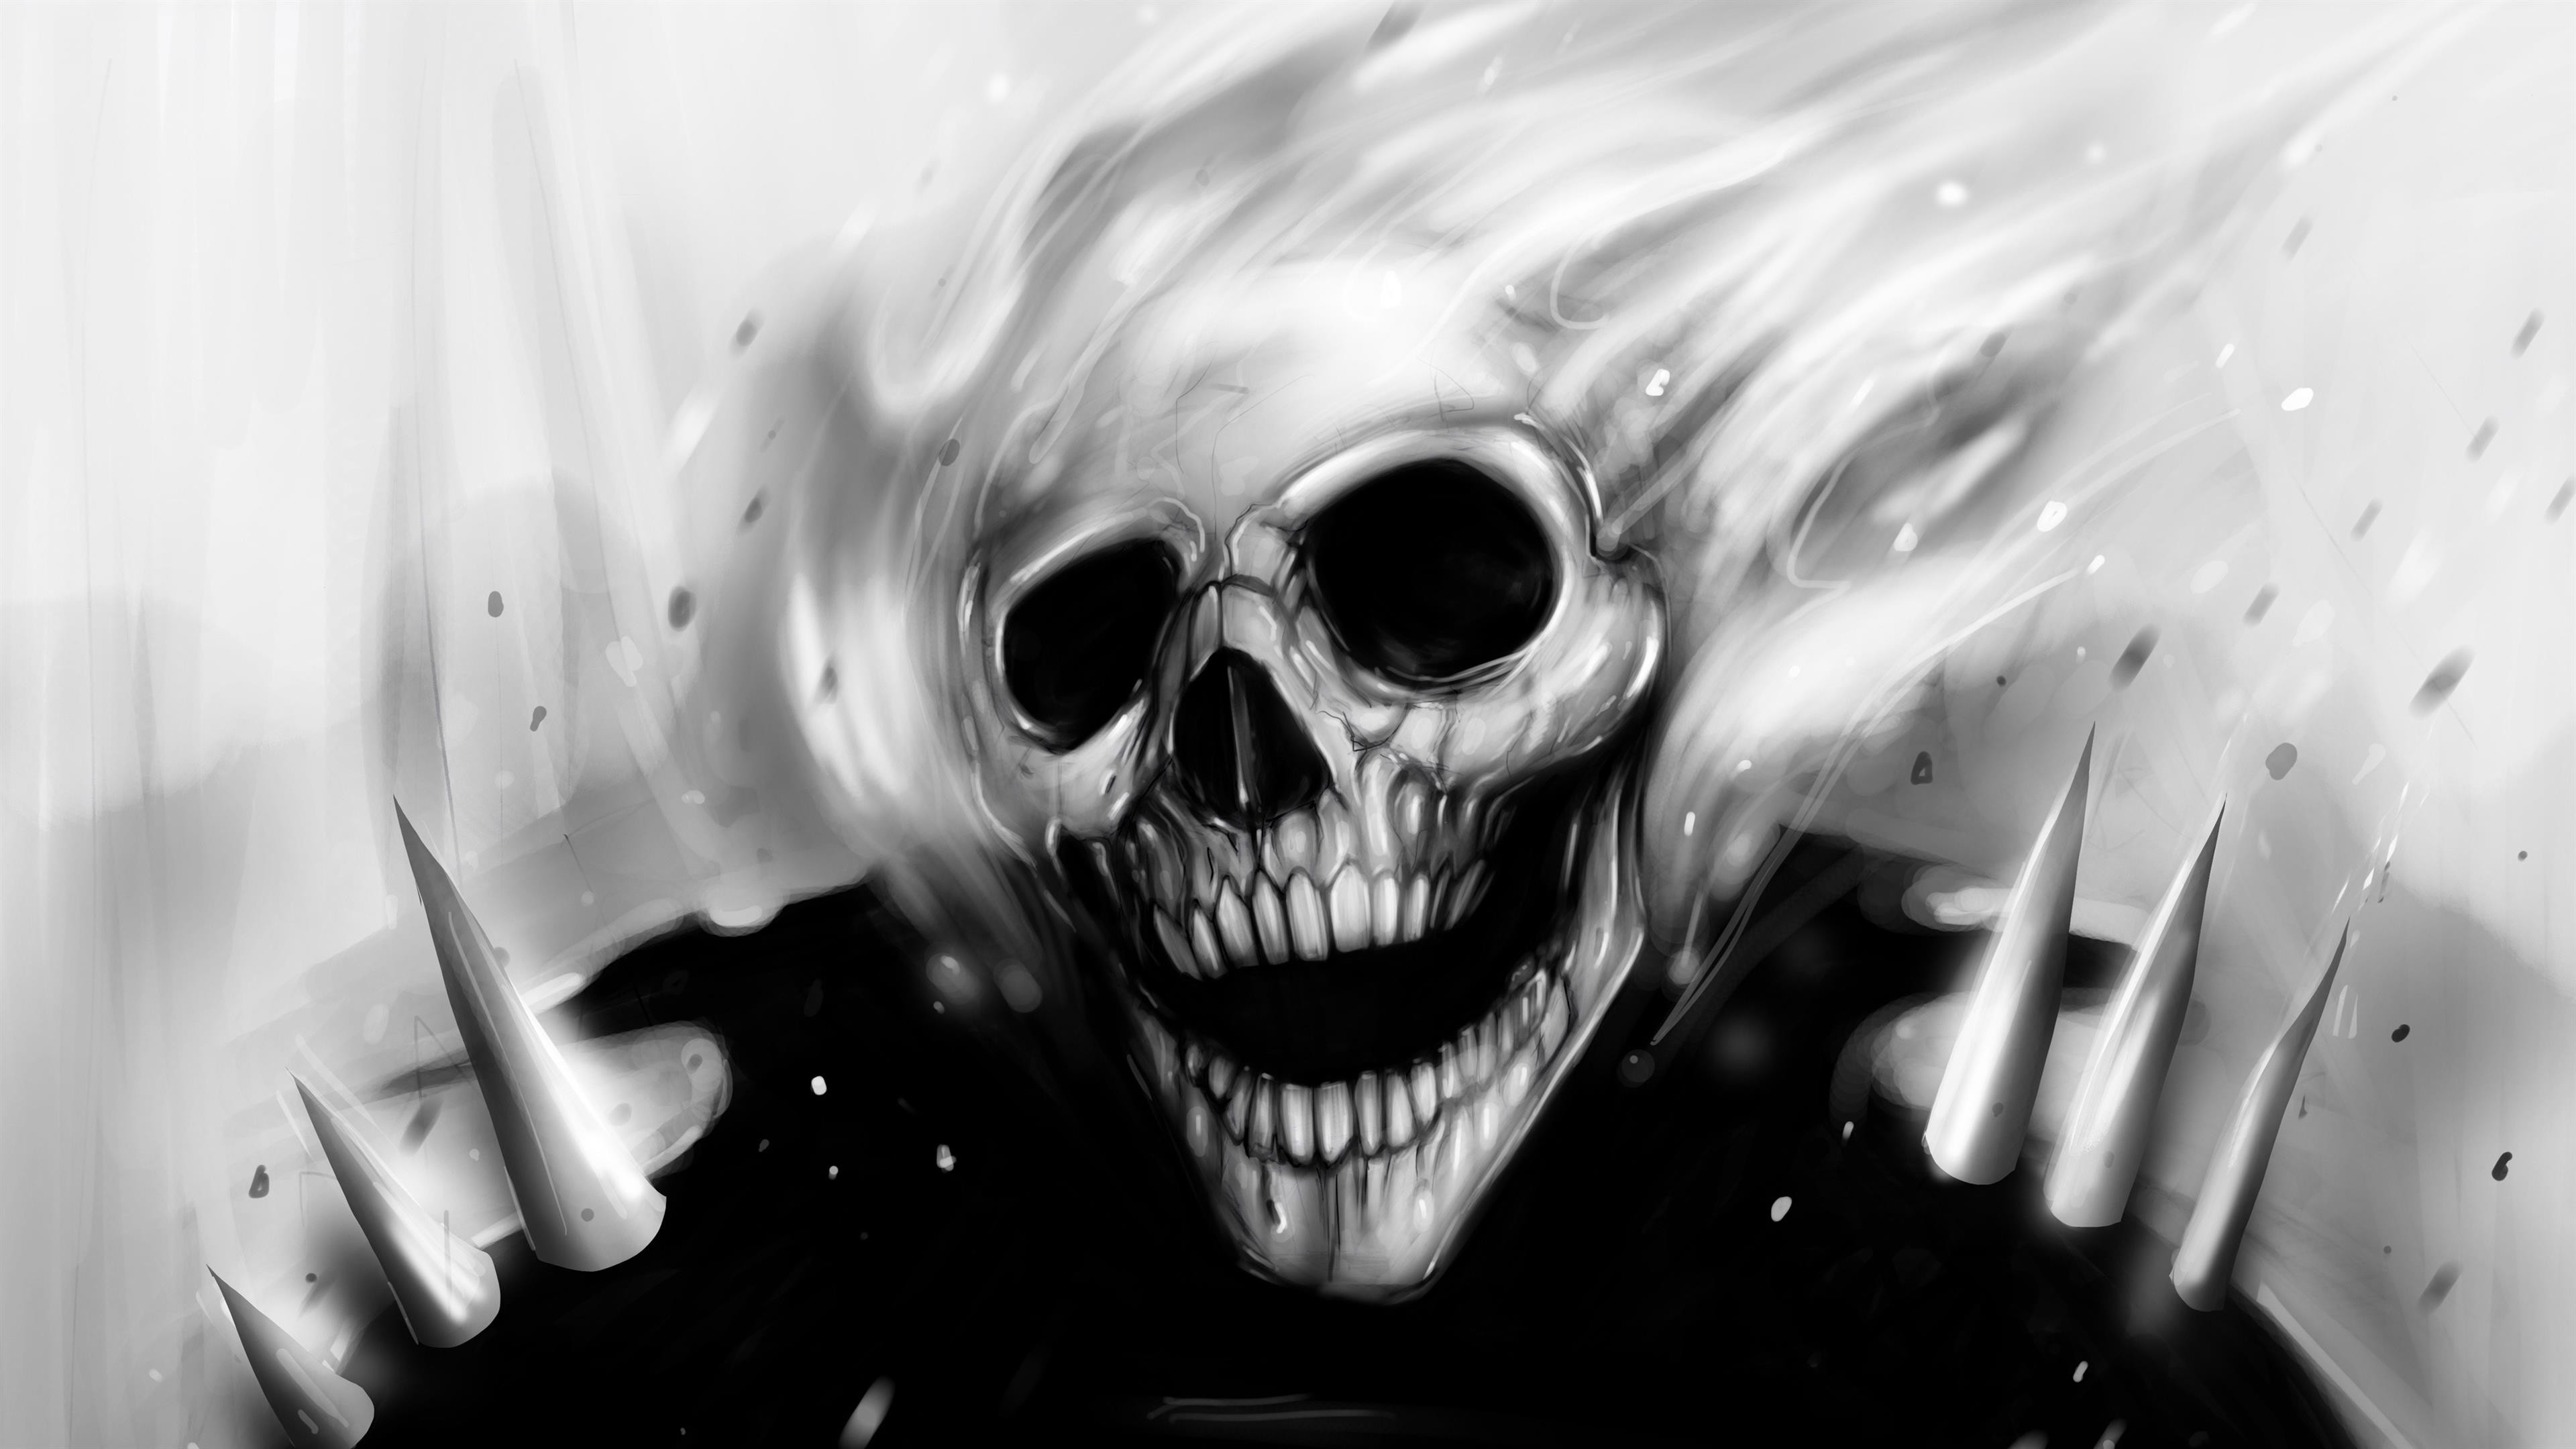 fantasma live wallpaper,cranio,occhiali,bianco e nero,monocromatico,osso